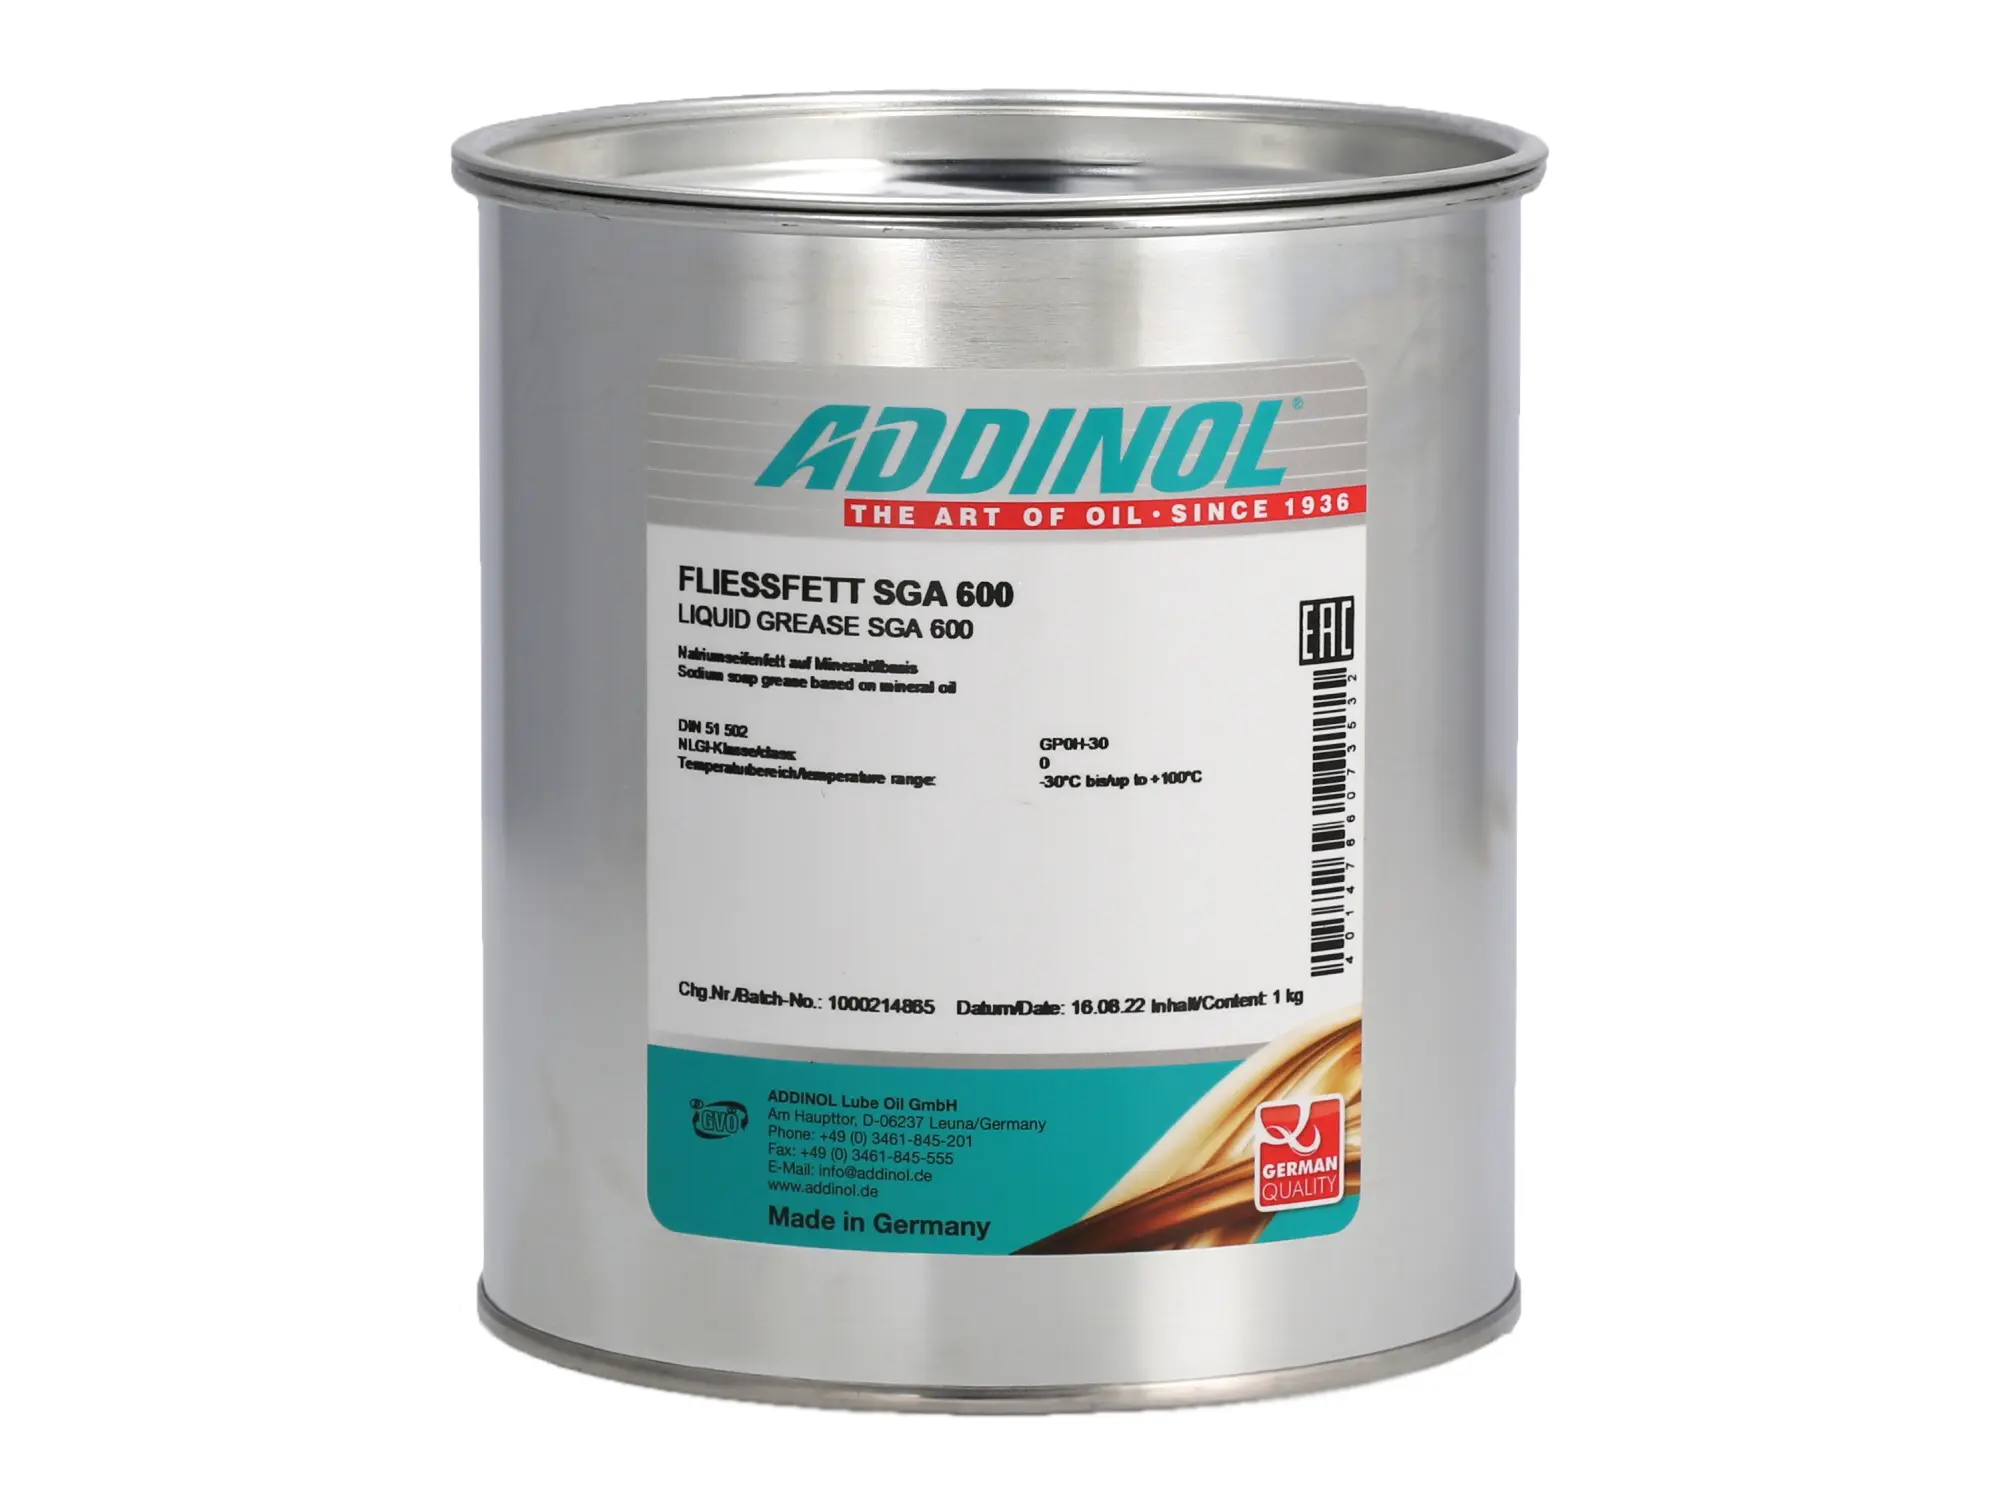 ADDINOL-Dose, Fließfett SGA 600, Natriumseifenfett auf Mineralölbasis - 1kg, Art.-Nr.: 10007788 - Bild 1